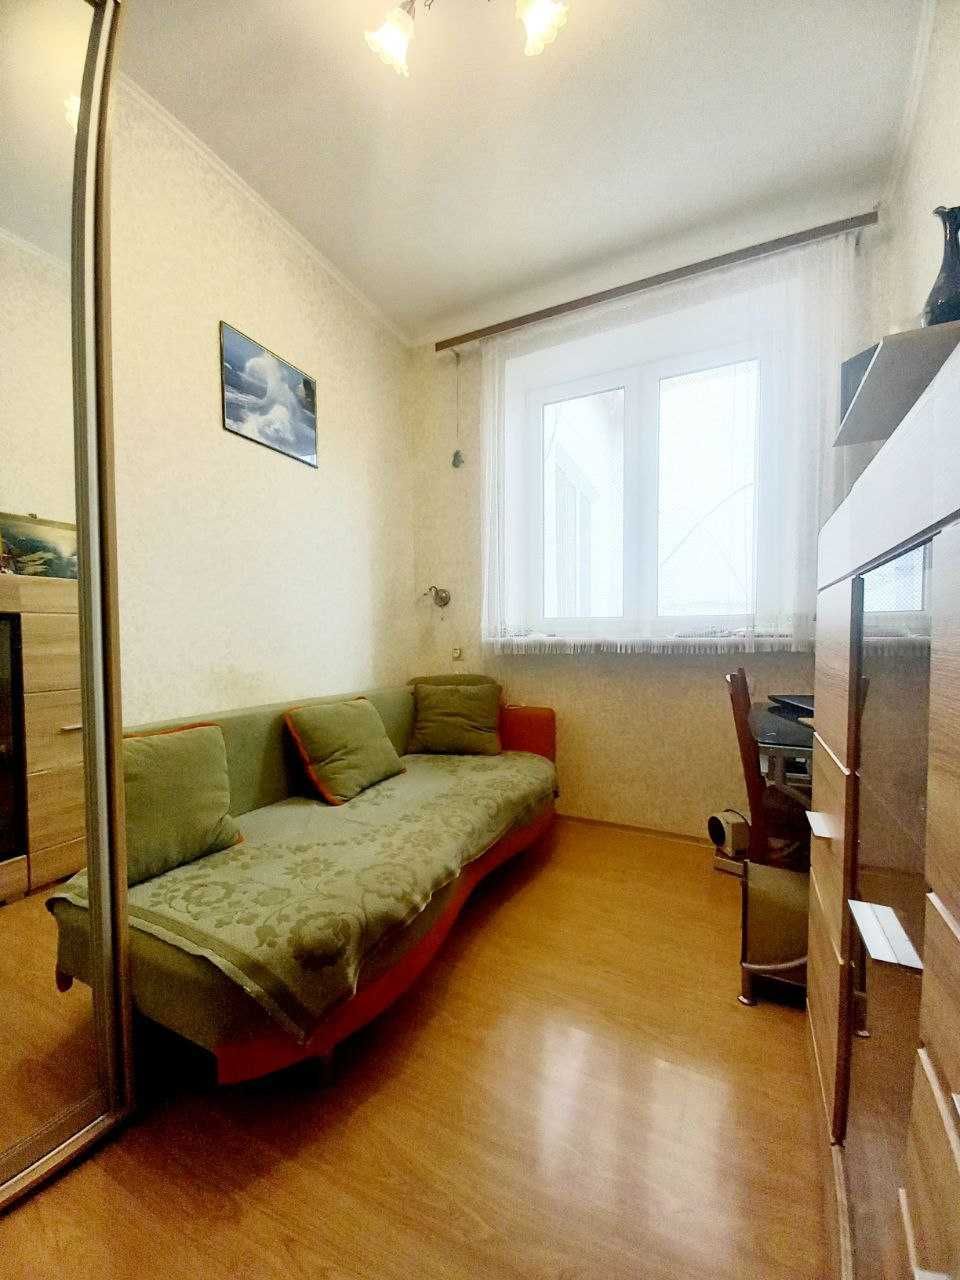 Продам квартиру в Центре Одессы аналогов нет 47 кв.м. Дворянская